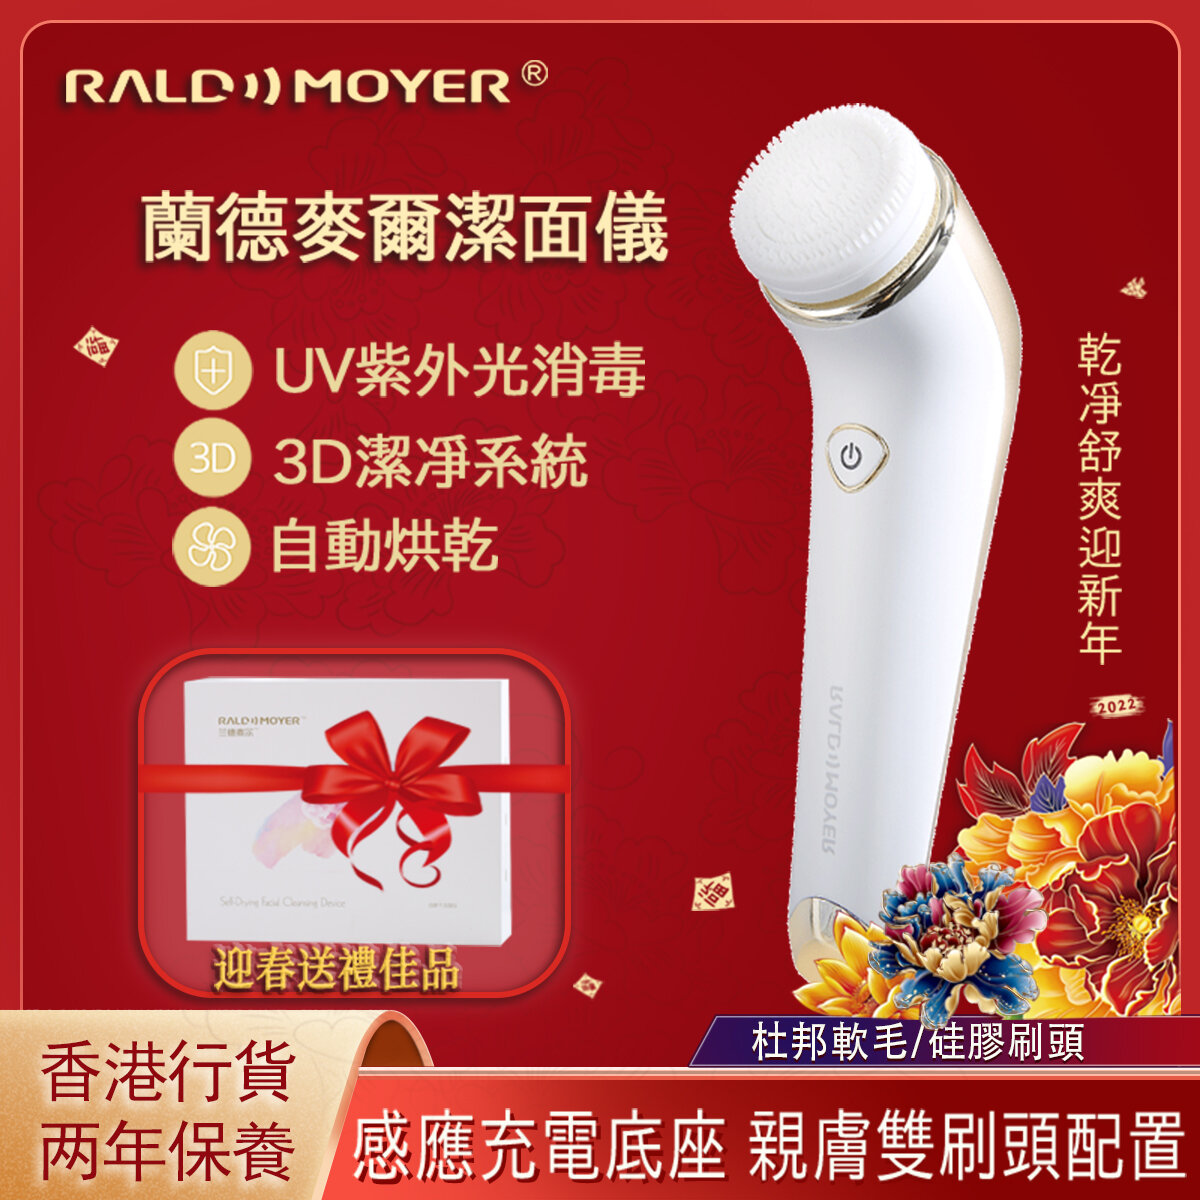 【母親節特價】LD8668(G)USB充電底座 紅外線殺菌 紫外光消毒 自烘乾潔面儀 | 優惠裝